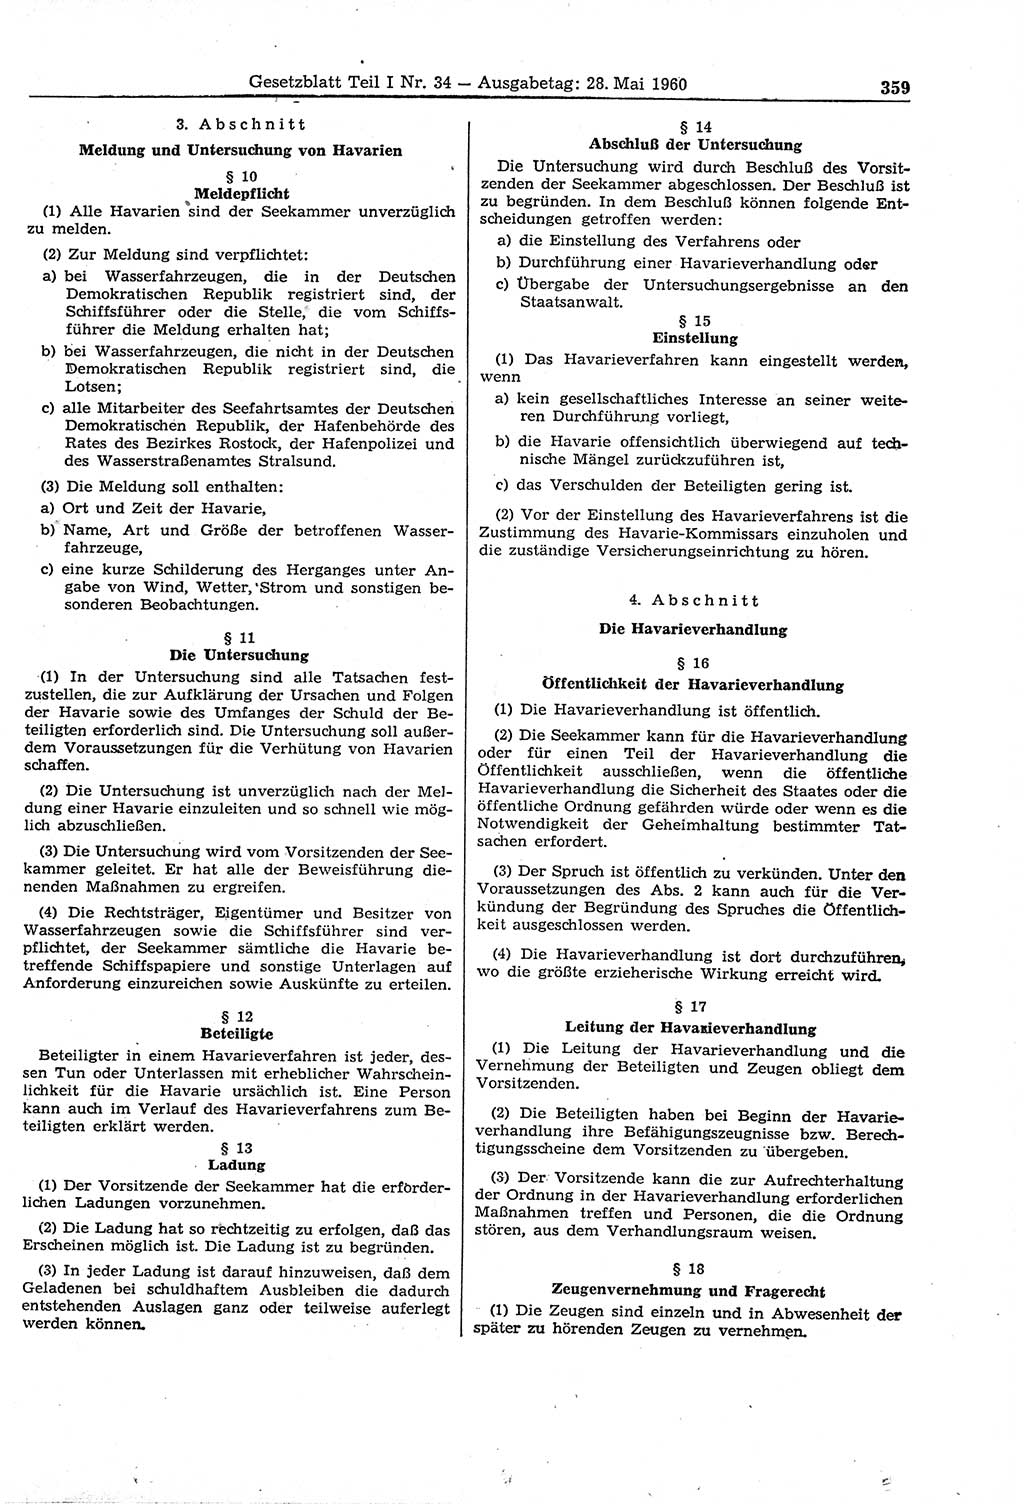 Gesetzblatt (GBl.) der Deutschen Demokratischen Republik (DDR) Teil Ⅰ 1960, Seite 359 (GBl. DDR Ⅰ 1960, S. 359)